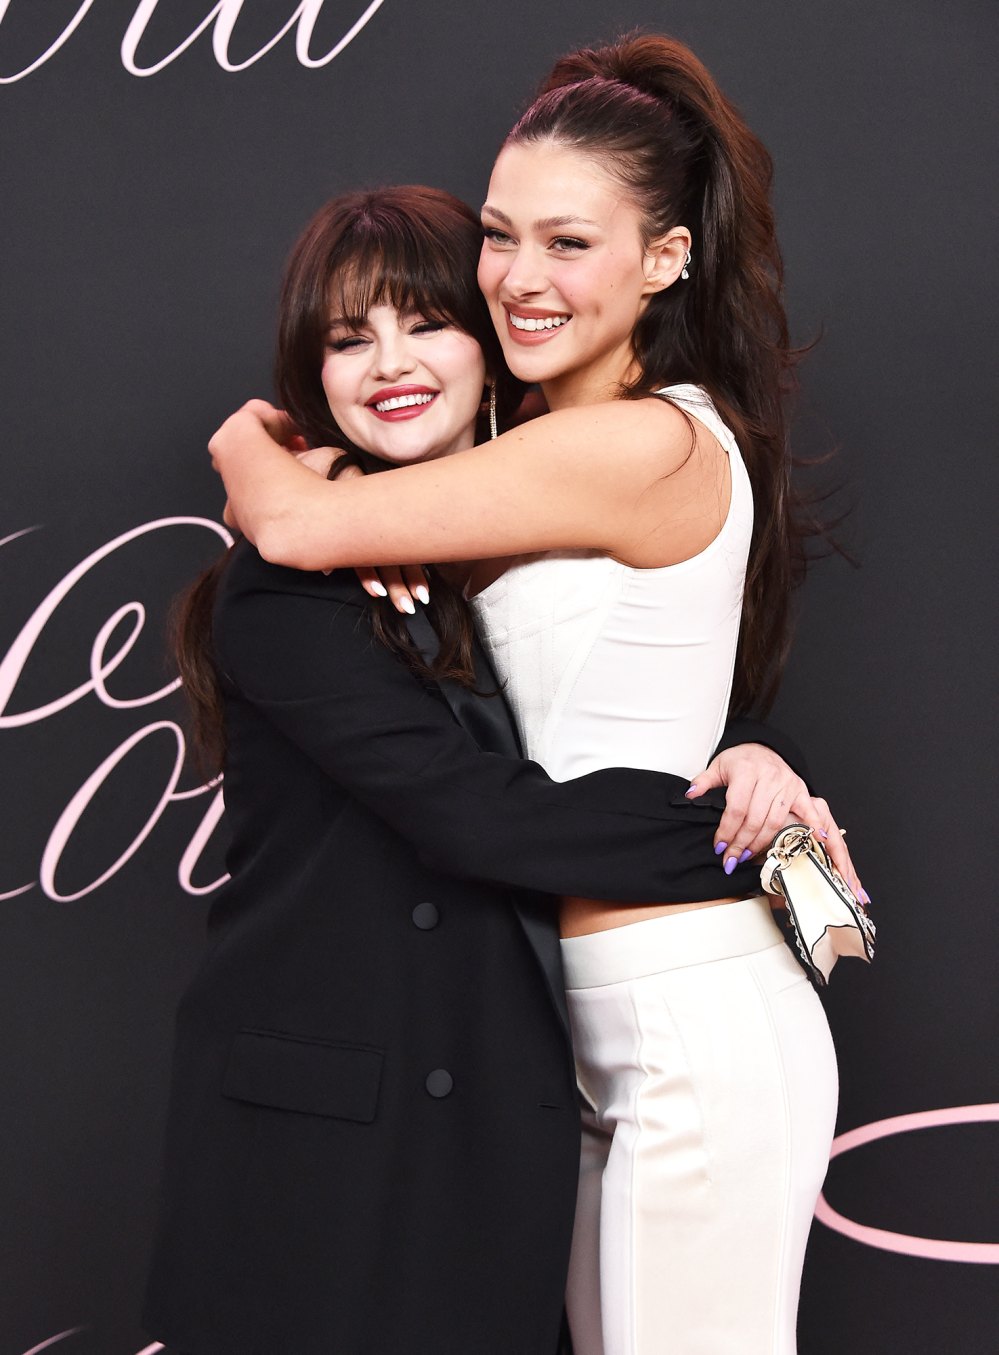 Selena Gomez präsentiert Auburn-Highlights bei der Lola-Red-Carpet-Premiere von Freundin Nicola Peltz